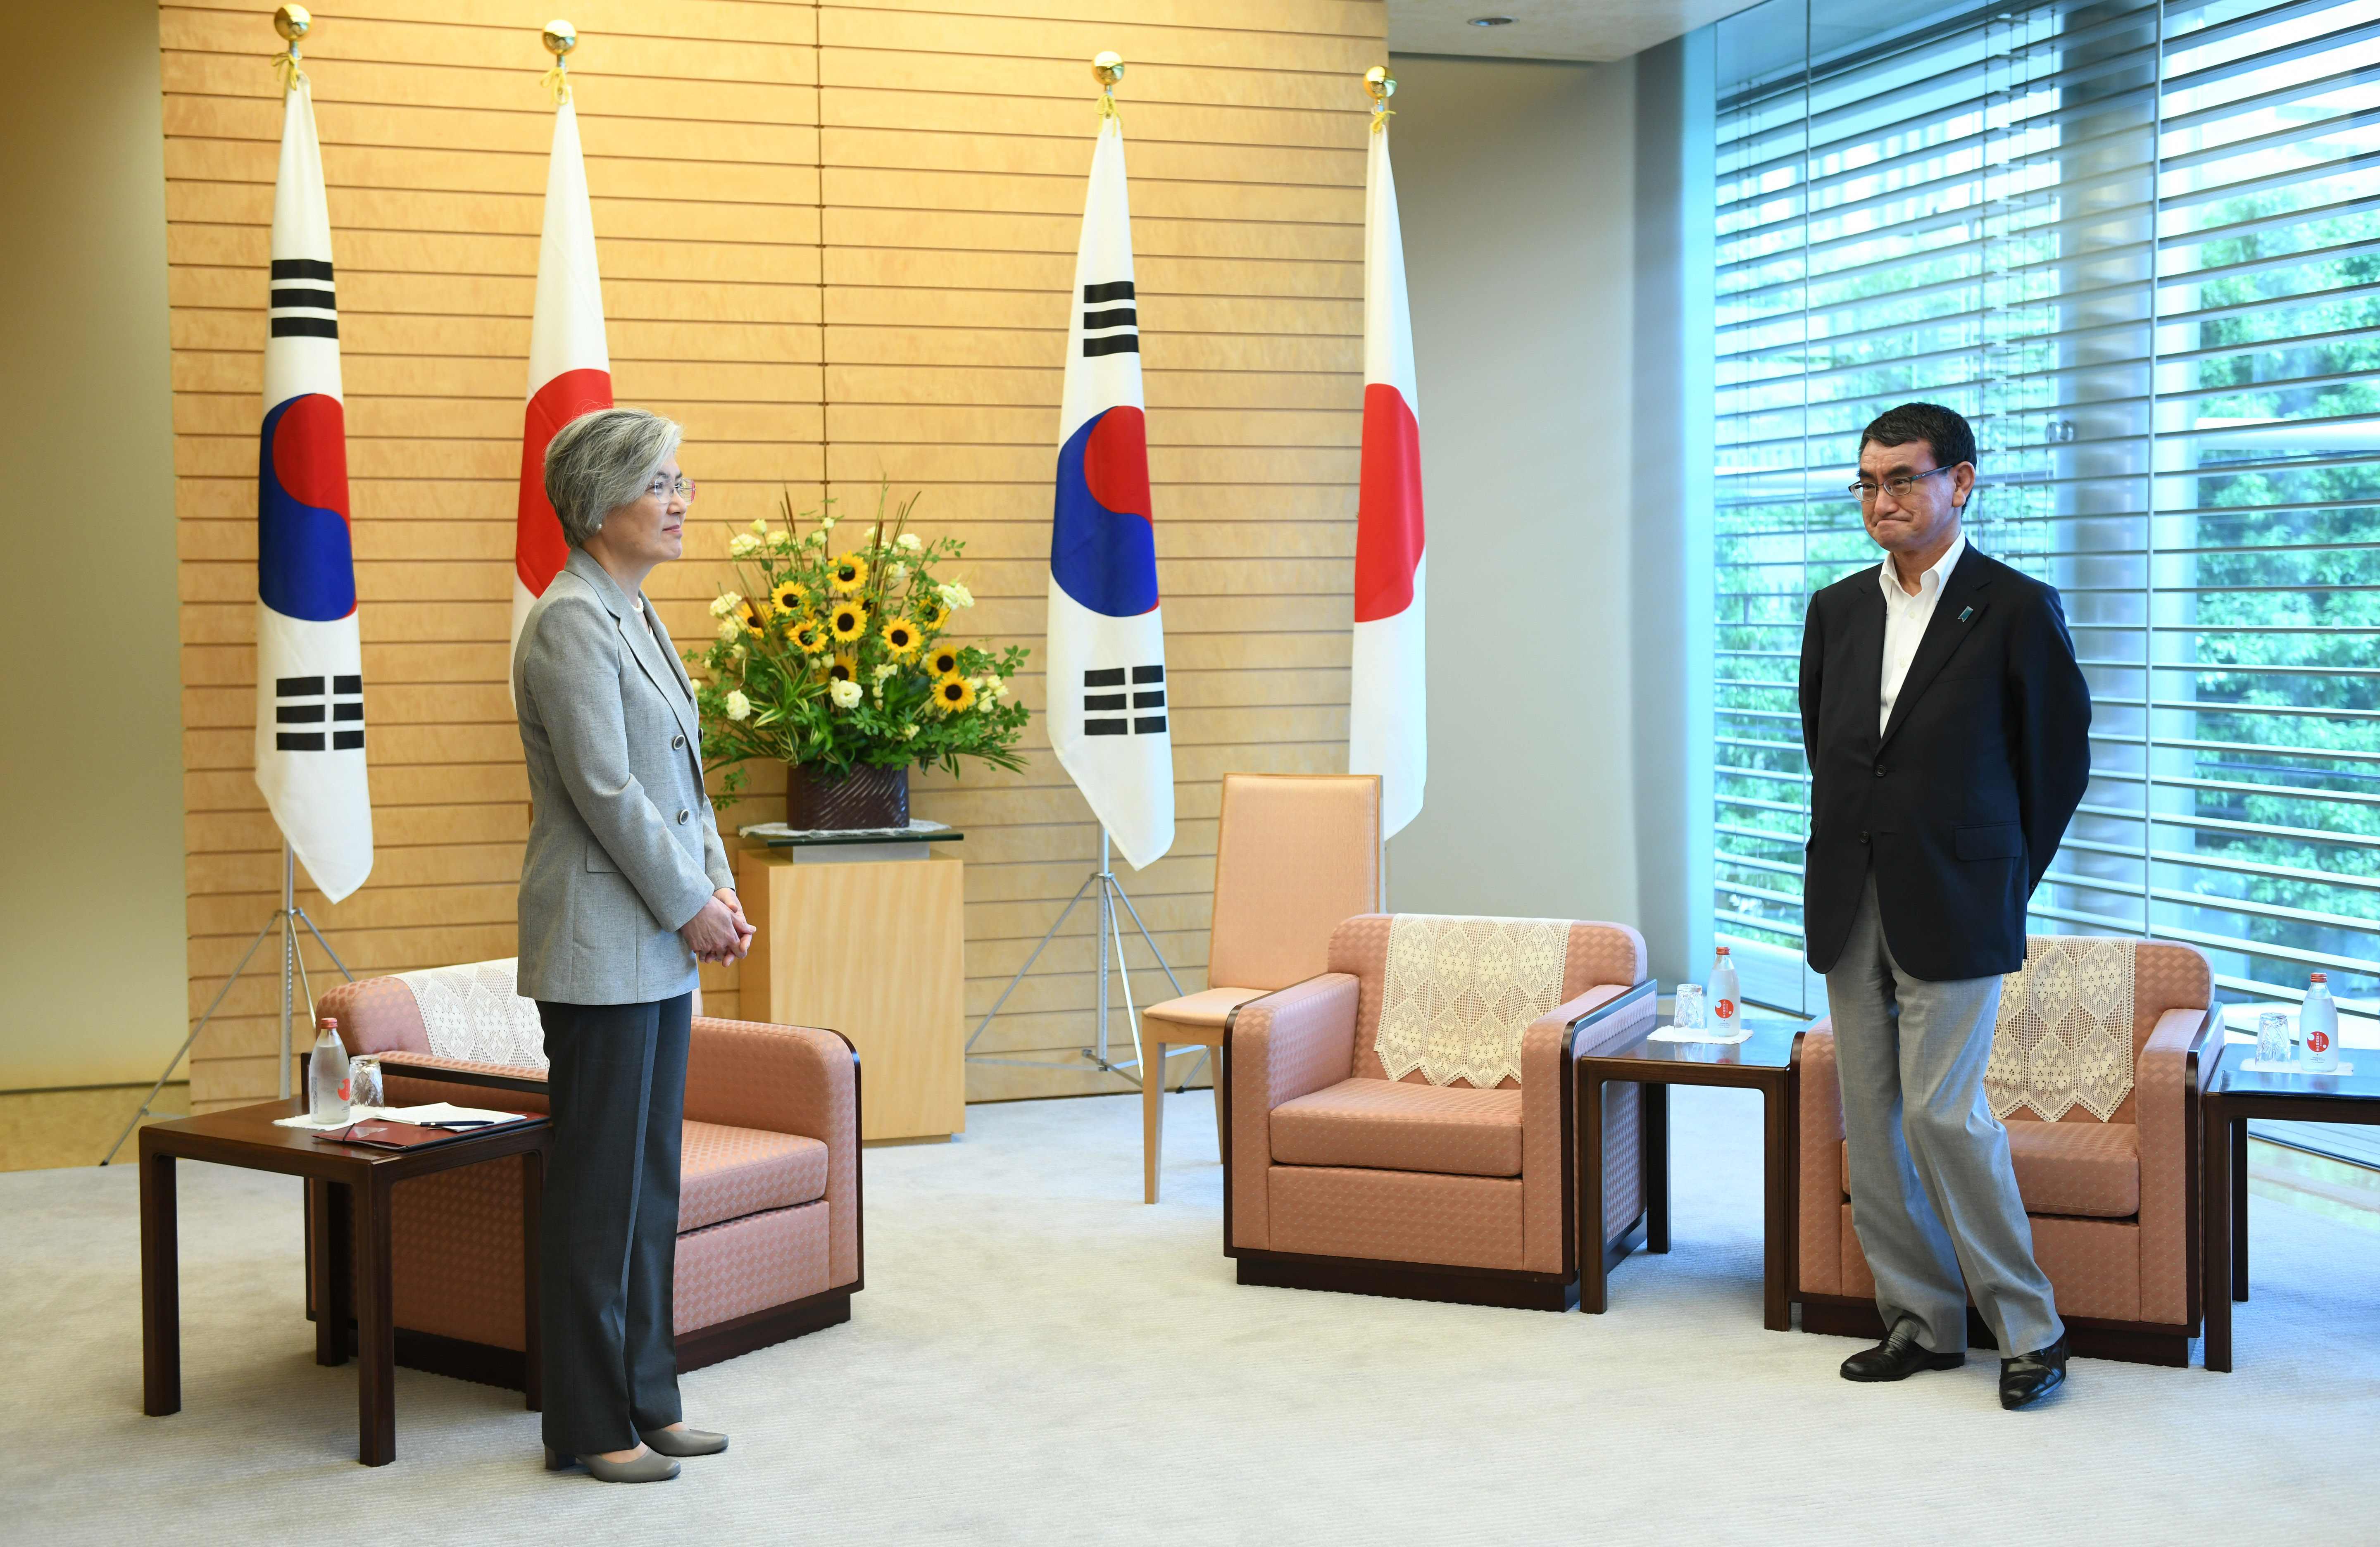 لقاء بين رئيس الوزراء اليابانى وزير خارجية كوريا الجنوبية